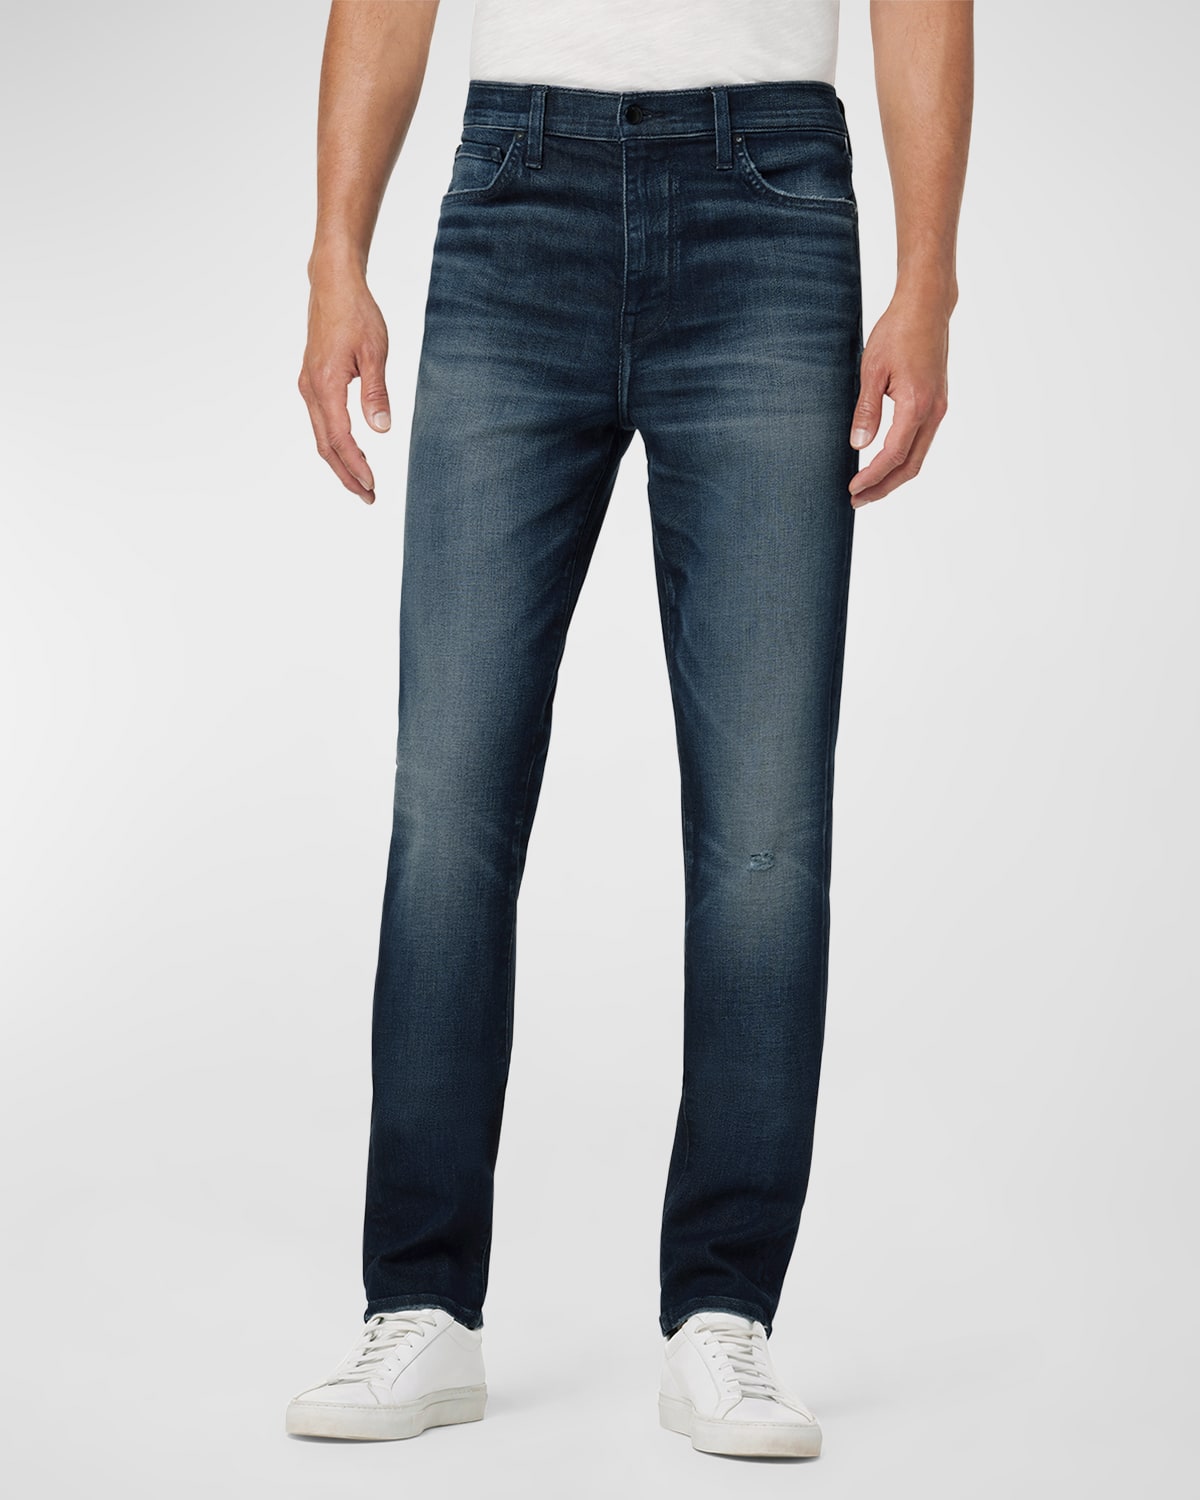 Men's Rhys Athletic Slim-Fit Kinetic Denim Jeans